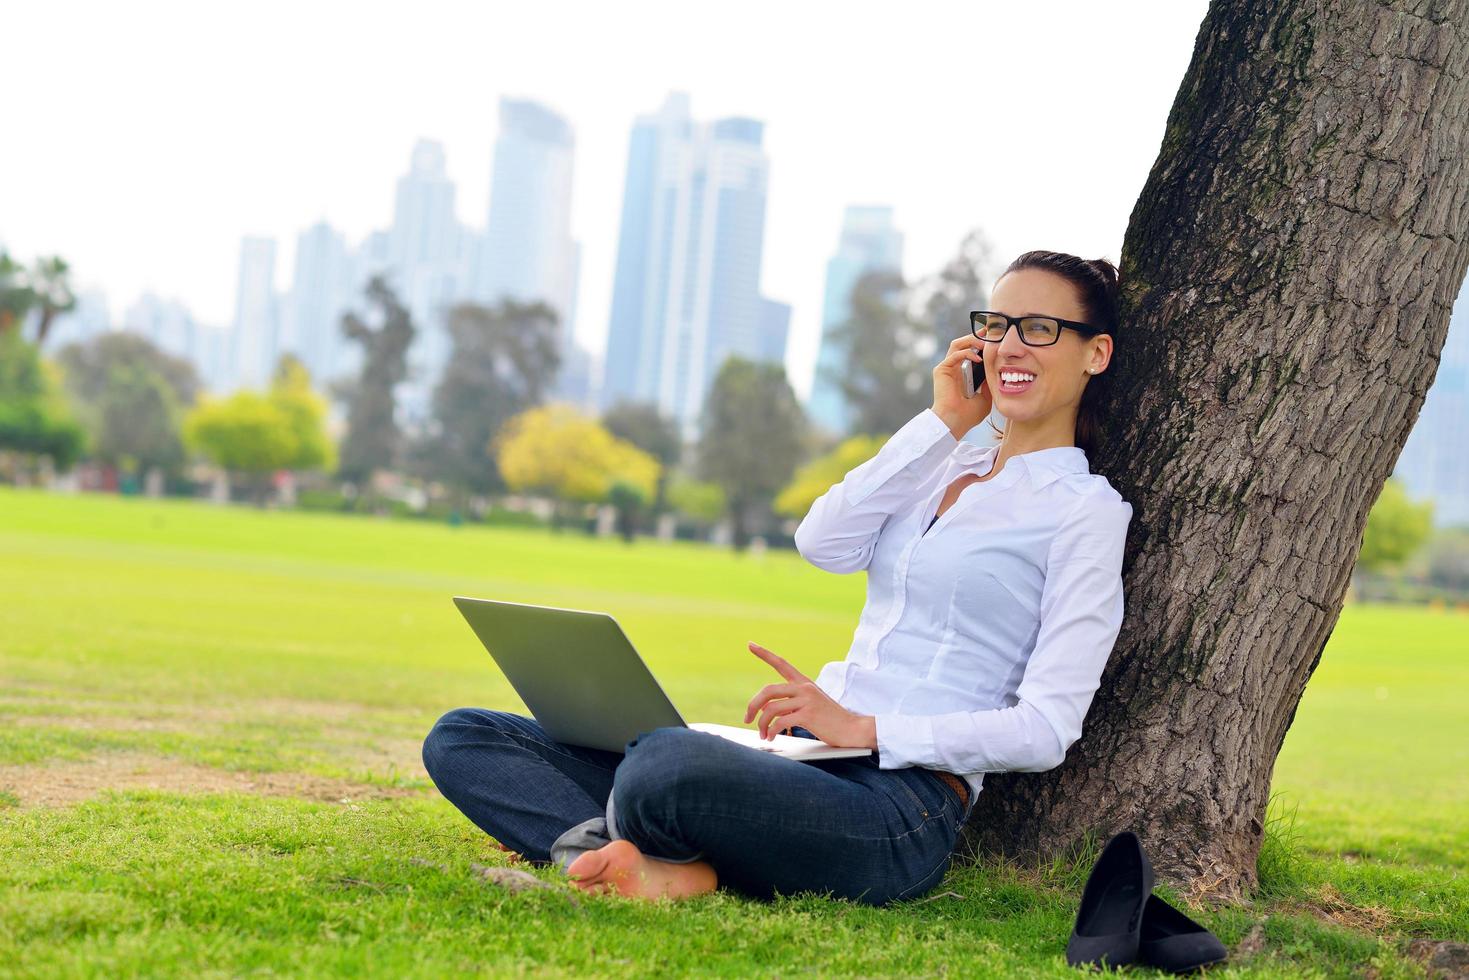 mujer con laptop en el parque foto